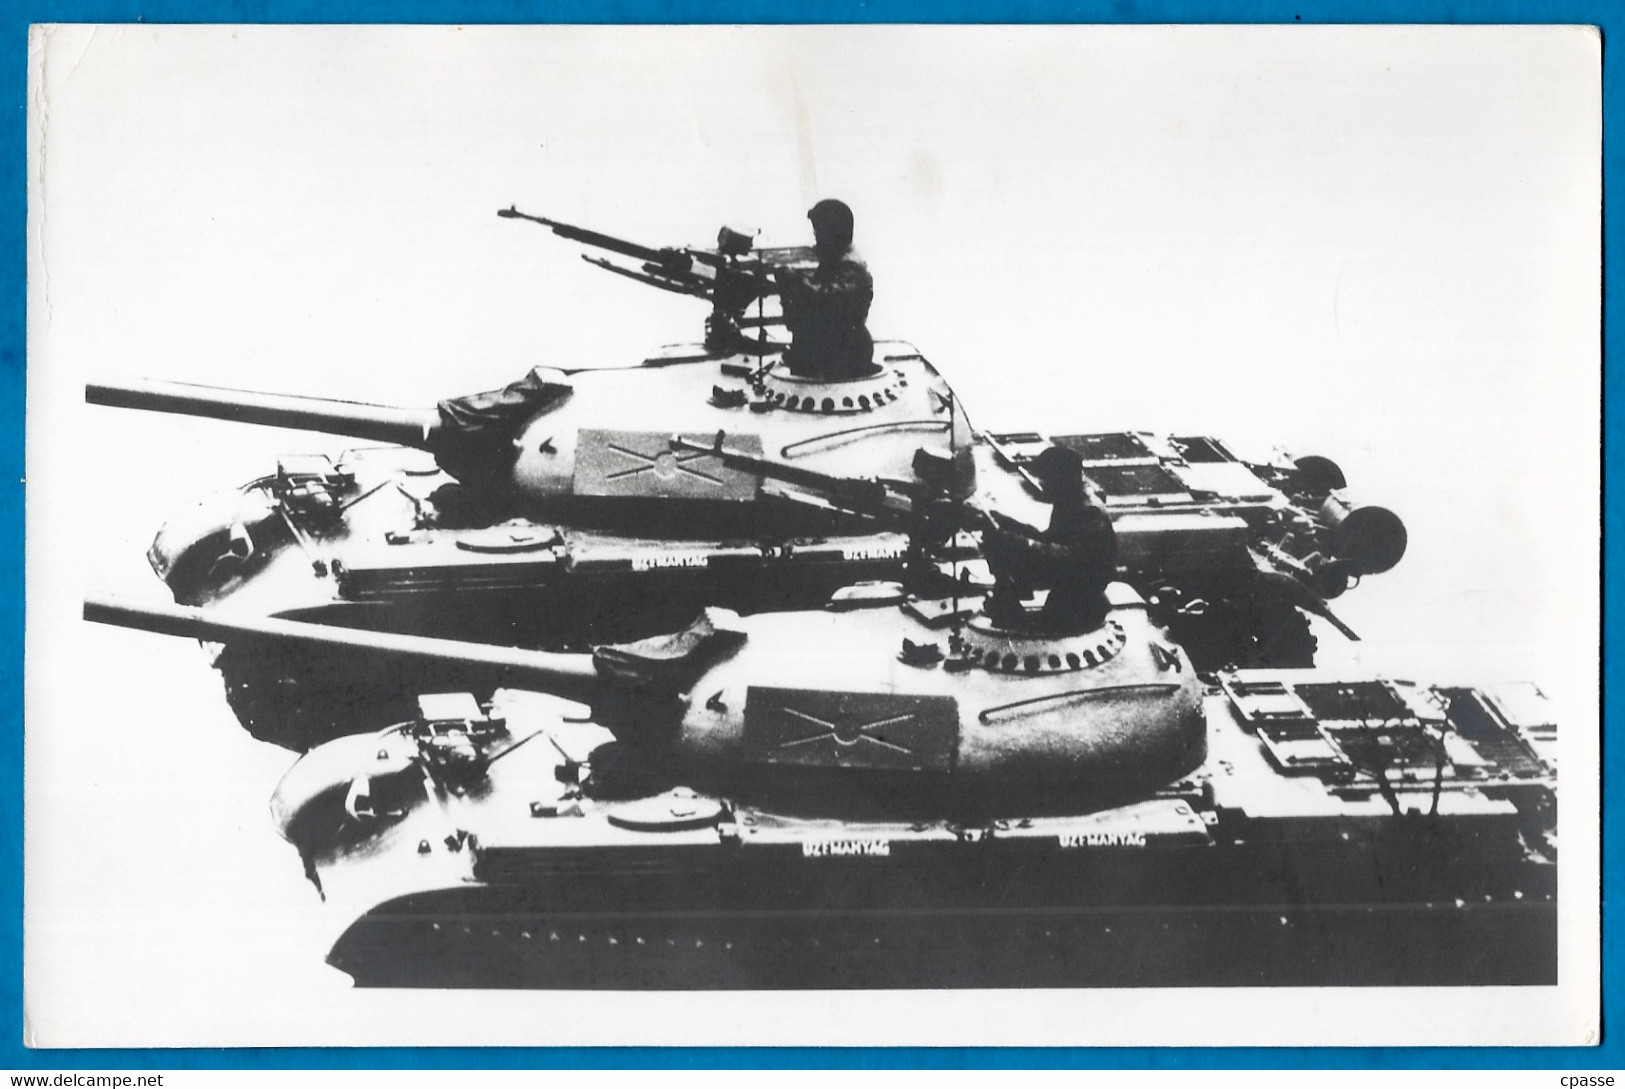 Documentation PHOTO Imprimée - Tank - Char D'Assaut - Blindé - Véhicule Militaire MILITARIA Armée - Fahrzeuge